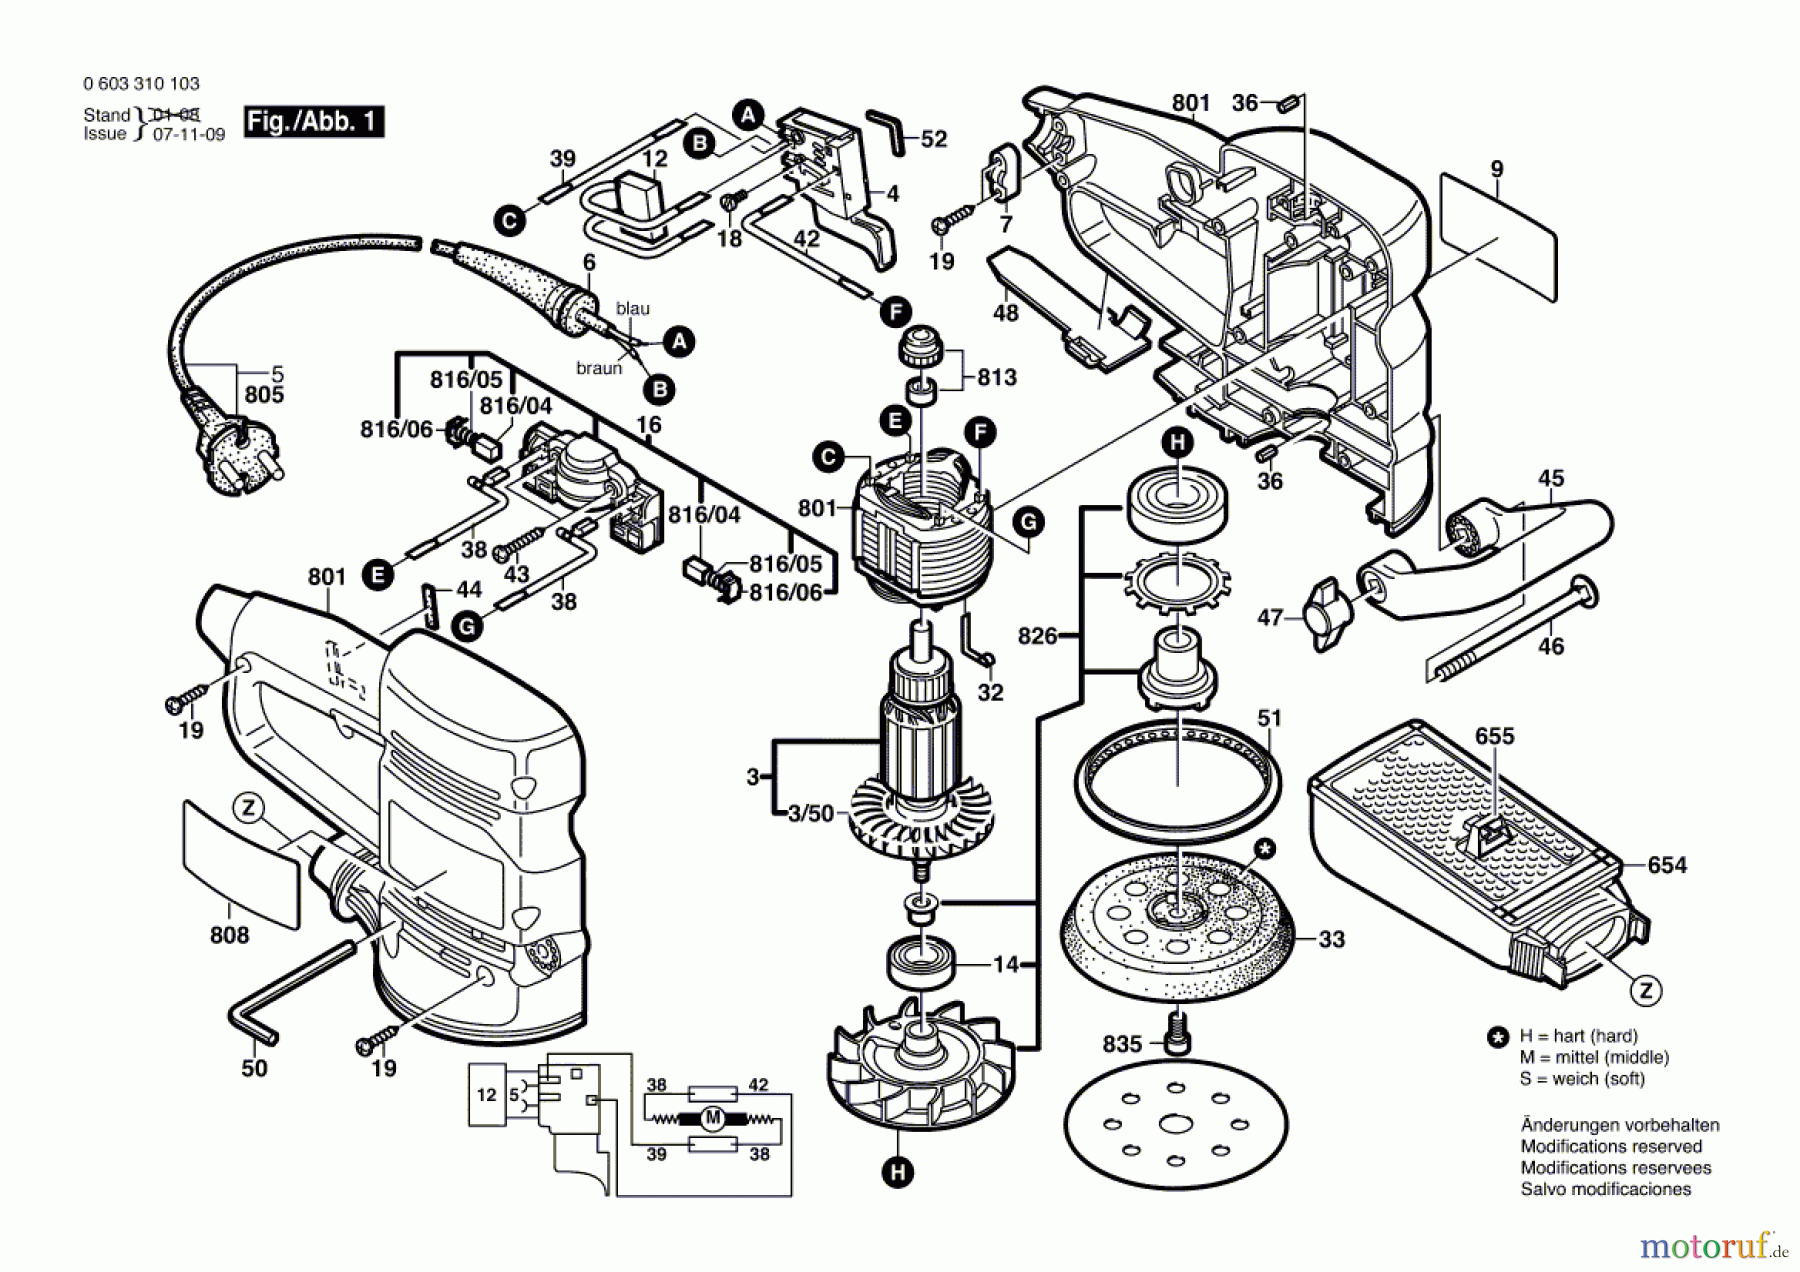  Bosch Werkzeug Exzenterschleifer PEX 400 A Seite 1